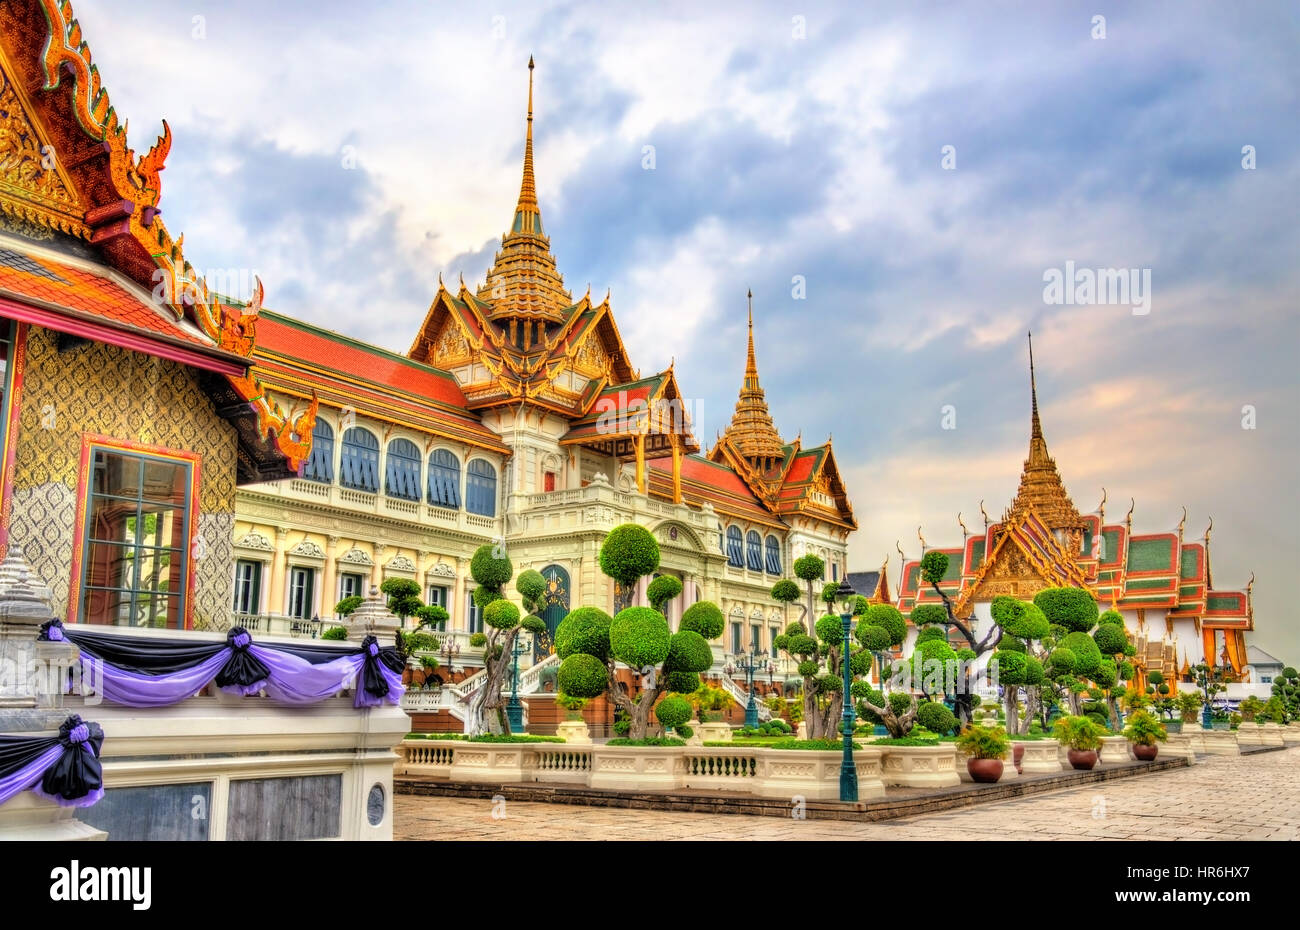 Chakri Maha Prasat Hall at the Grand Palace in Bangkok, Thailand Stock Photo